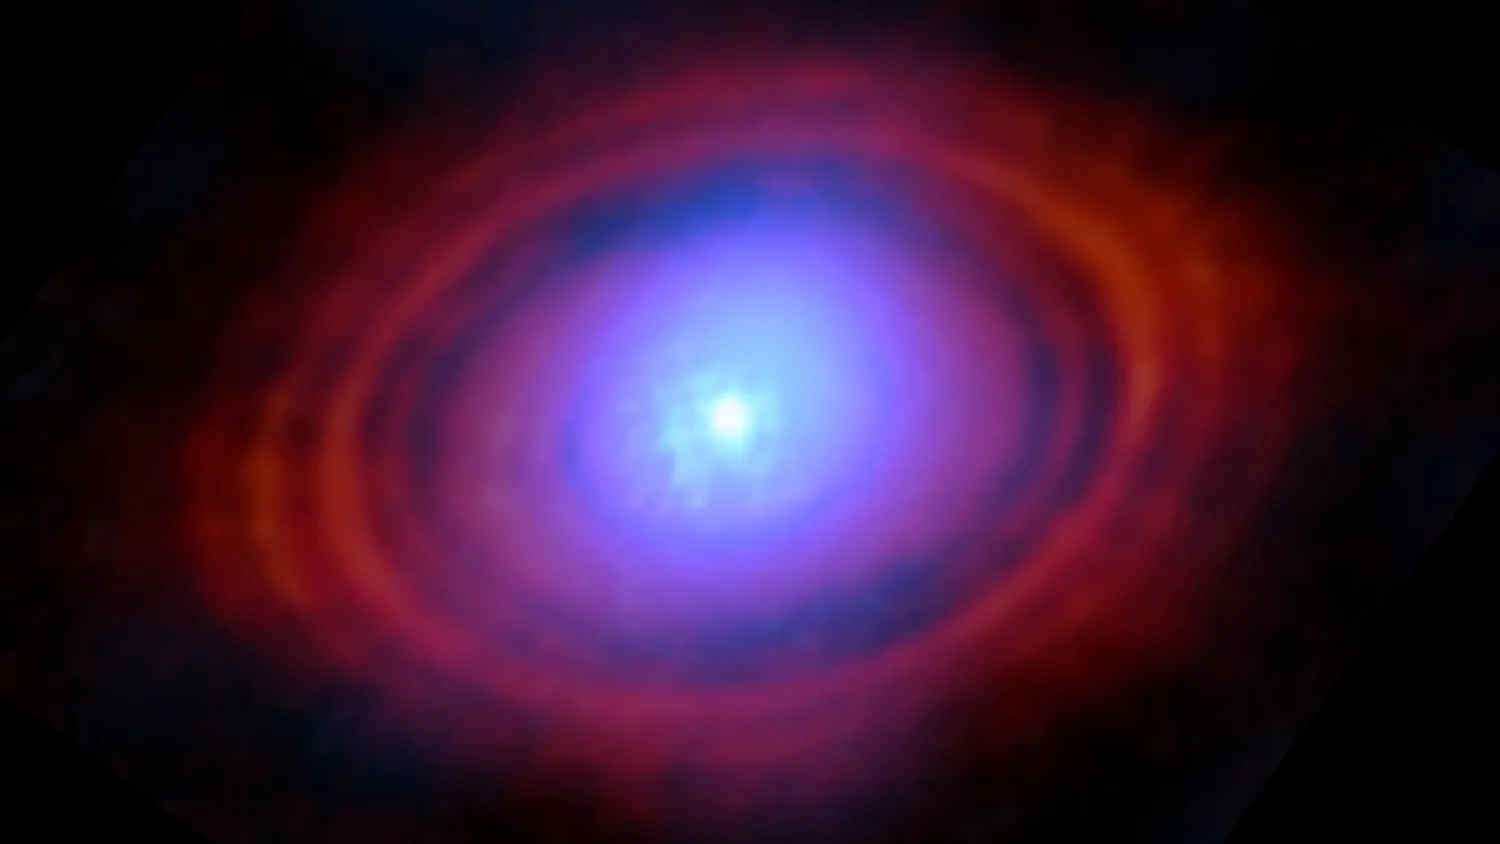 Eine leicht verschwommene blaue Kugel in der Mitte des Bildes ist von einer Scheibe mit lila und dann roten Schleiern umgeben. Die Struktur ist vor einem schwarzen Hintergrund zu sehen.